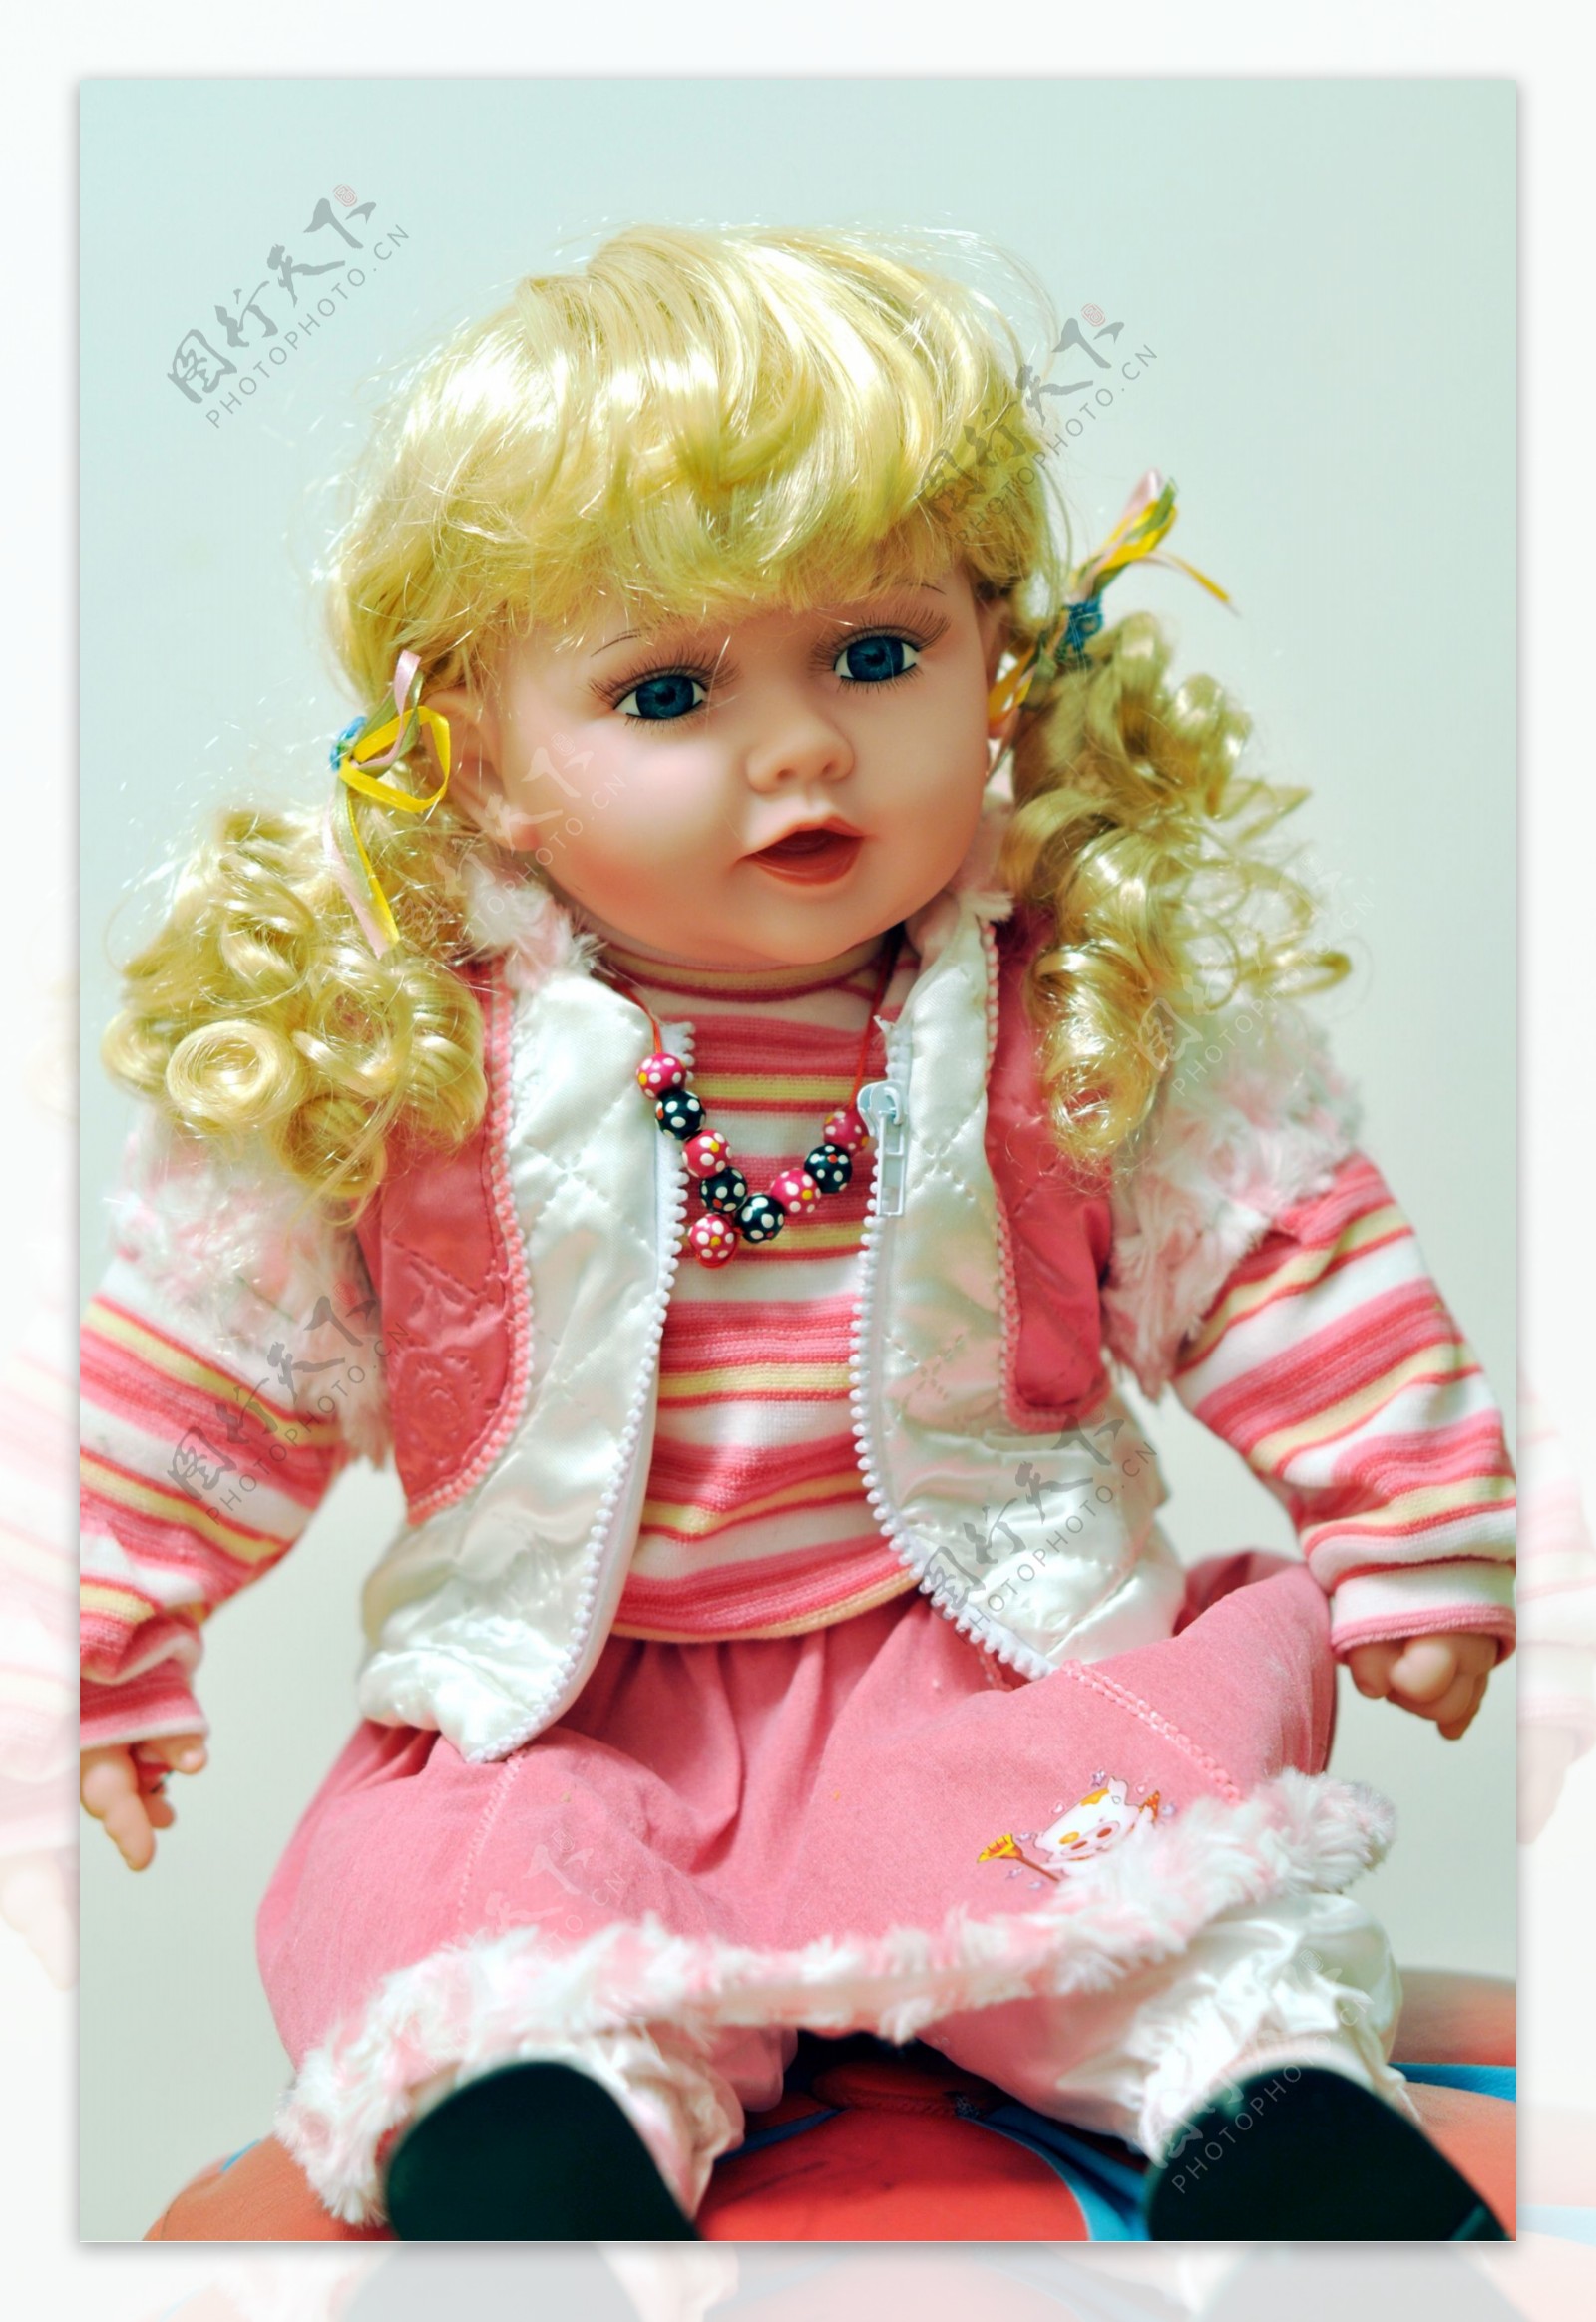 仿真婴儿 可爱娃娃 外贸出口硅胶制作 洋娃娃玩具-阿里巴巴